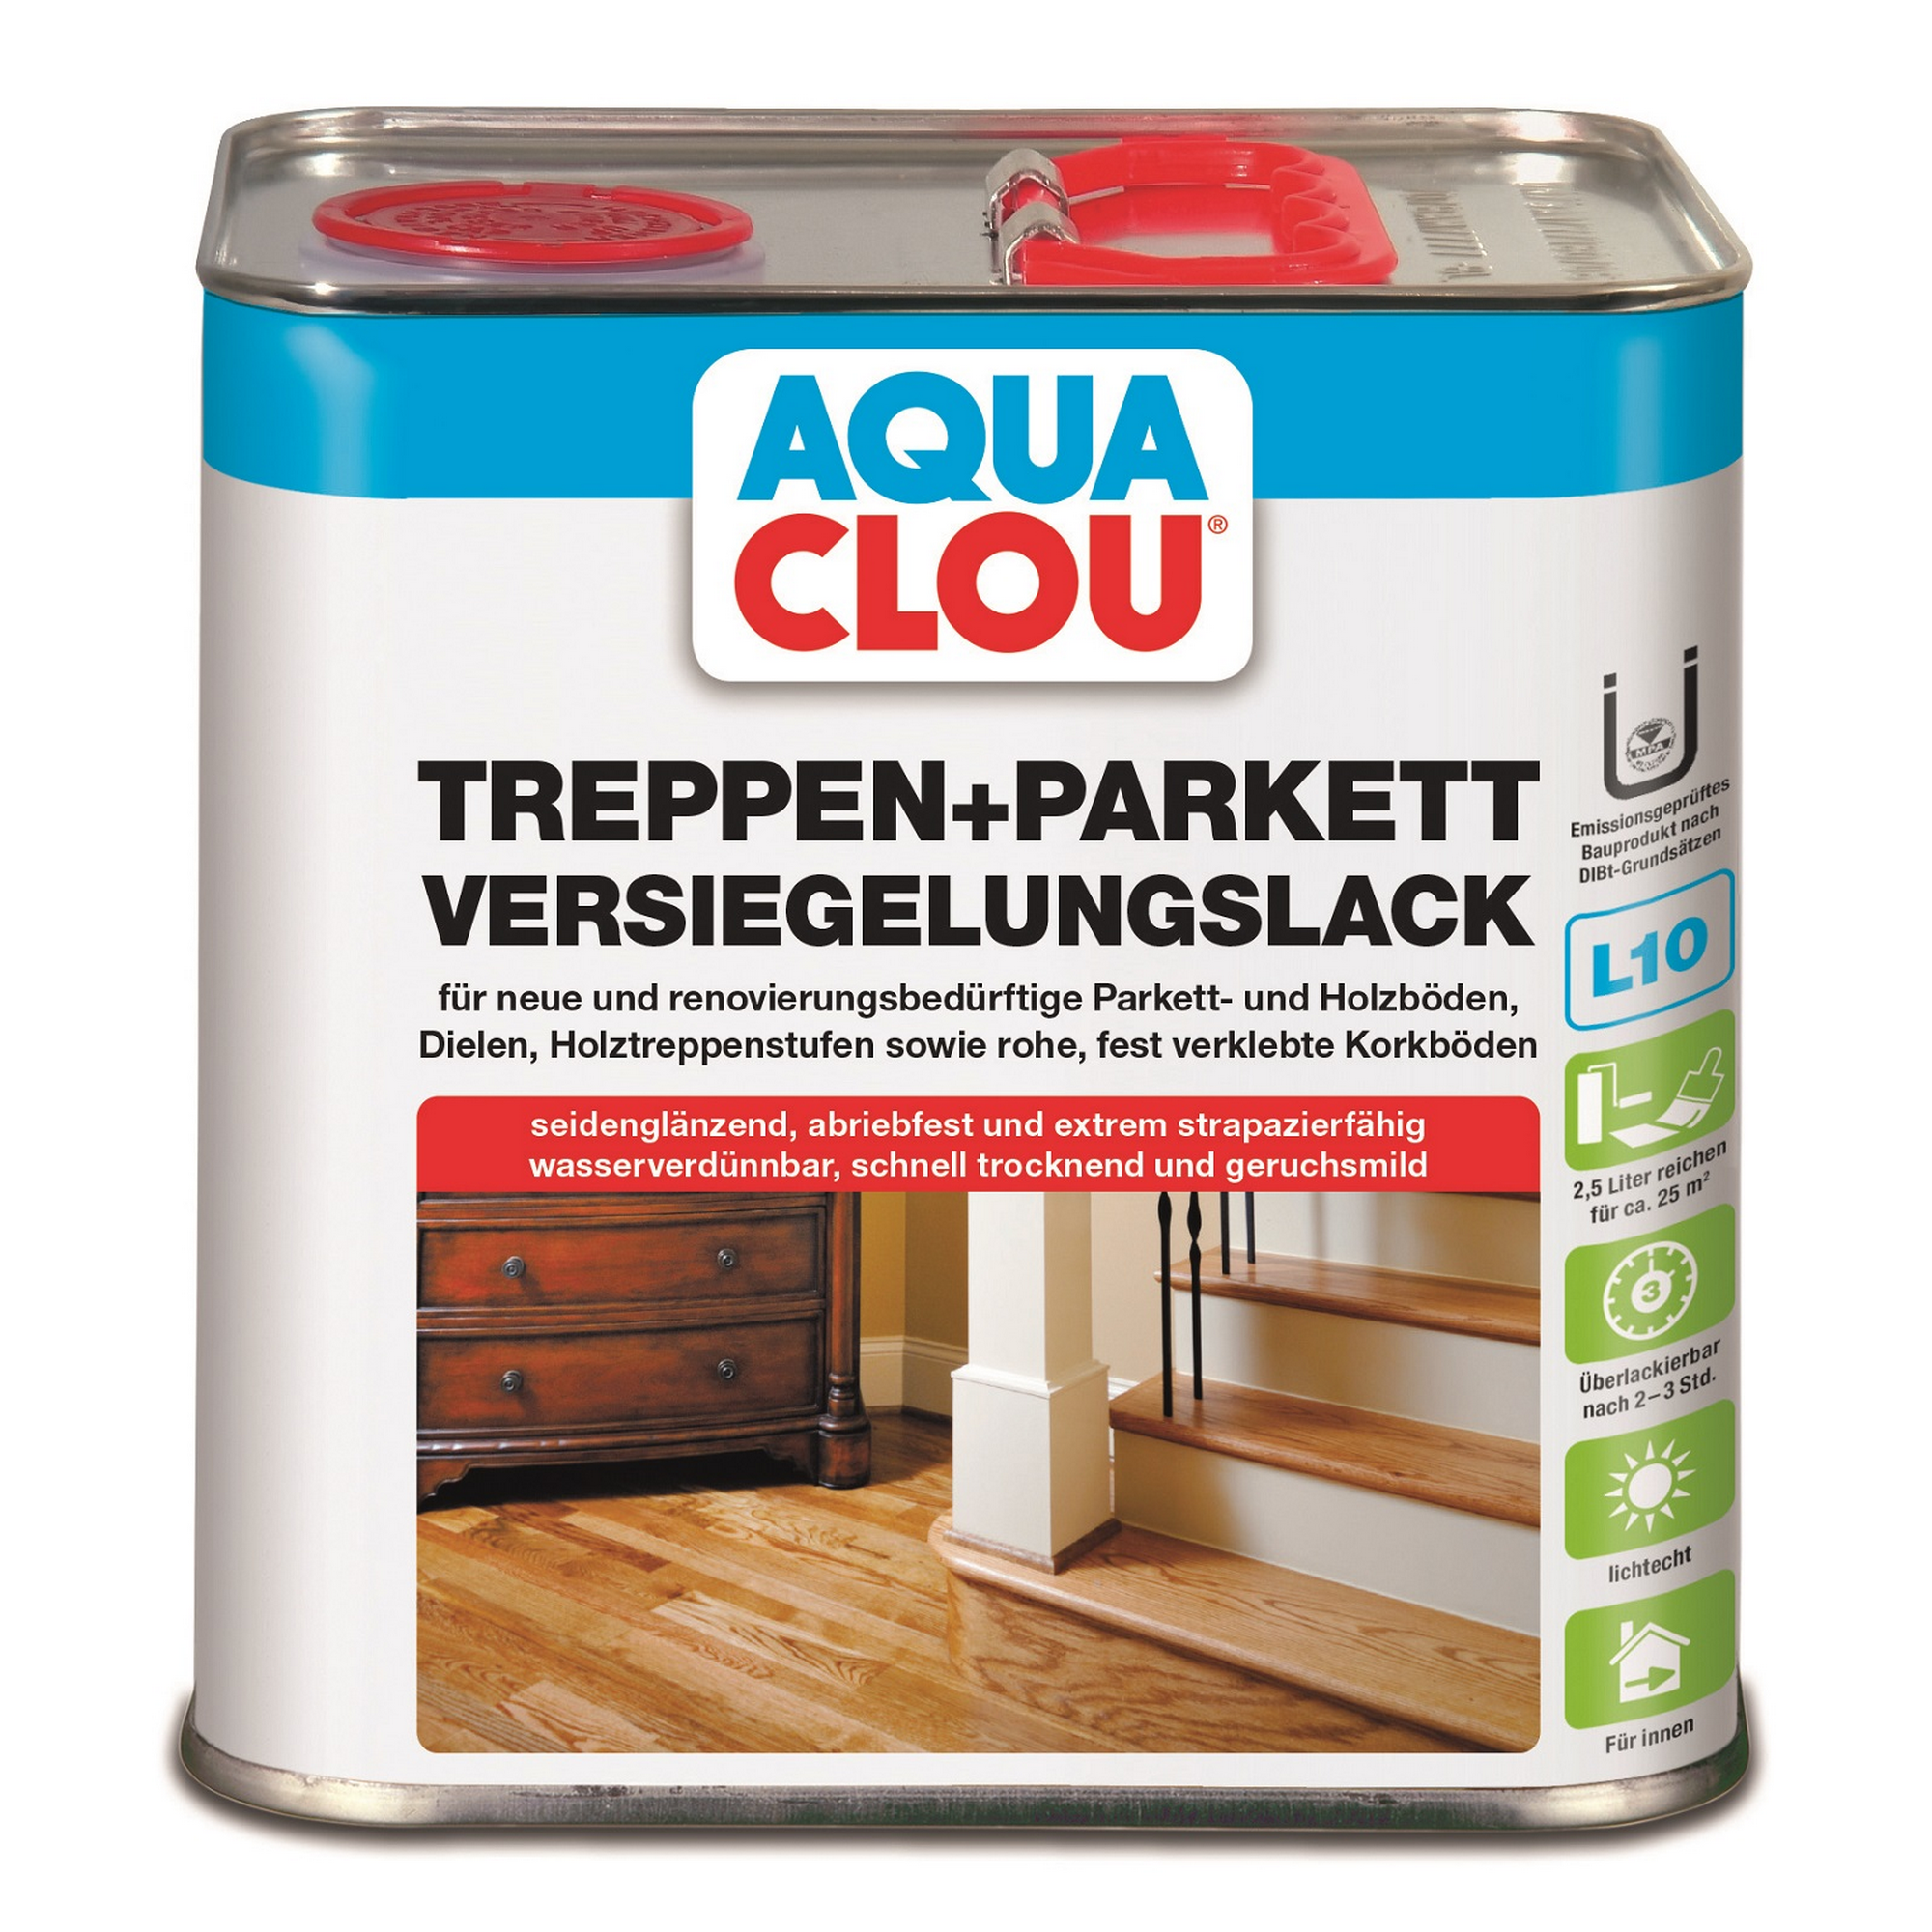 Treppen- & Parkett-Versiegelungslack transparent seidenglänzend 2,5 l + product picture